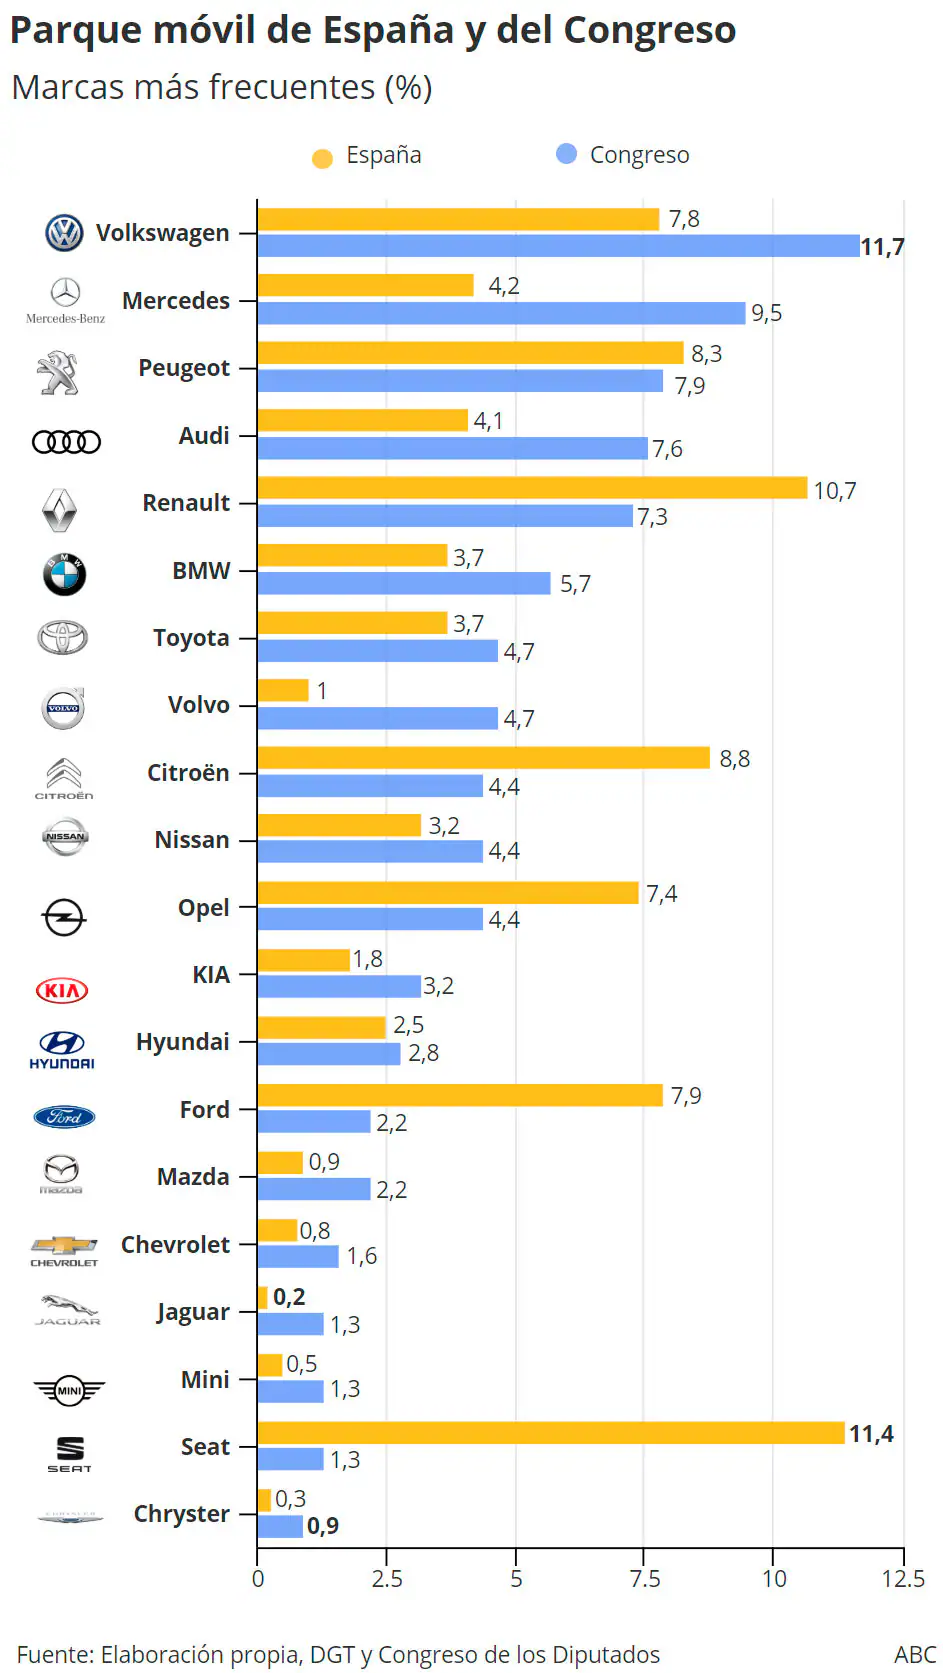 Marcas de coches más comunes en España y en el Congreso